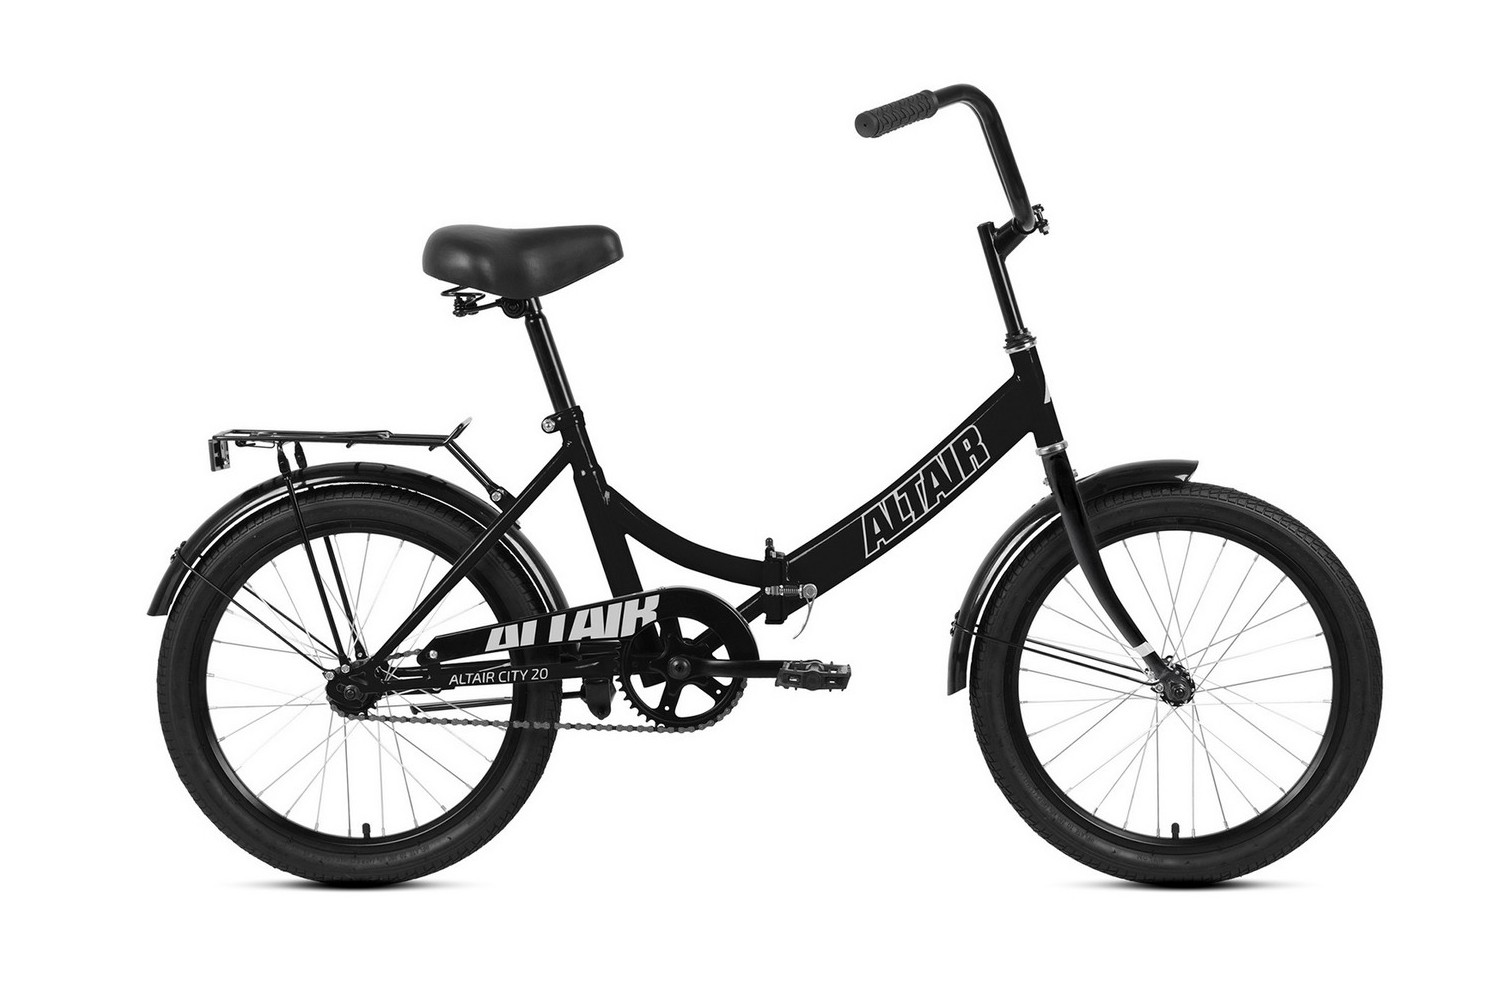 Складной велосипед Altair City 20, год 2022, цвет Черный-Серебристый, ростовка 14